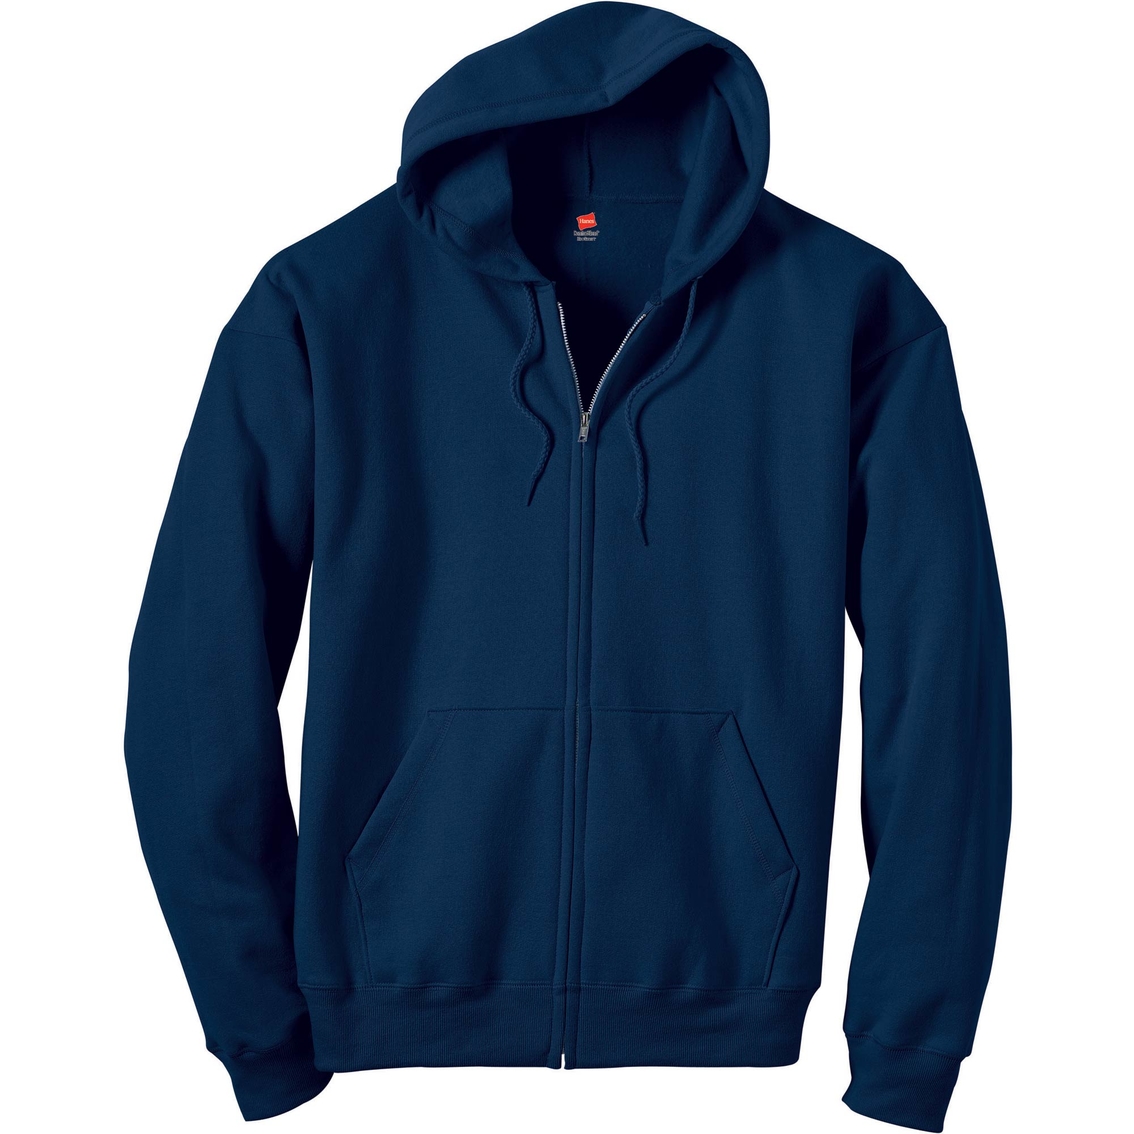 Hanes Ecosmart Full Zip Hoodie | Hoodies & Jackets | Clothing ...